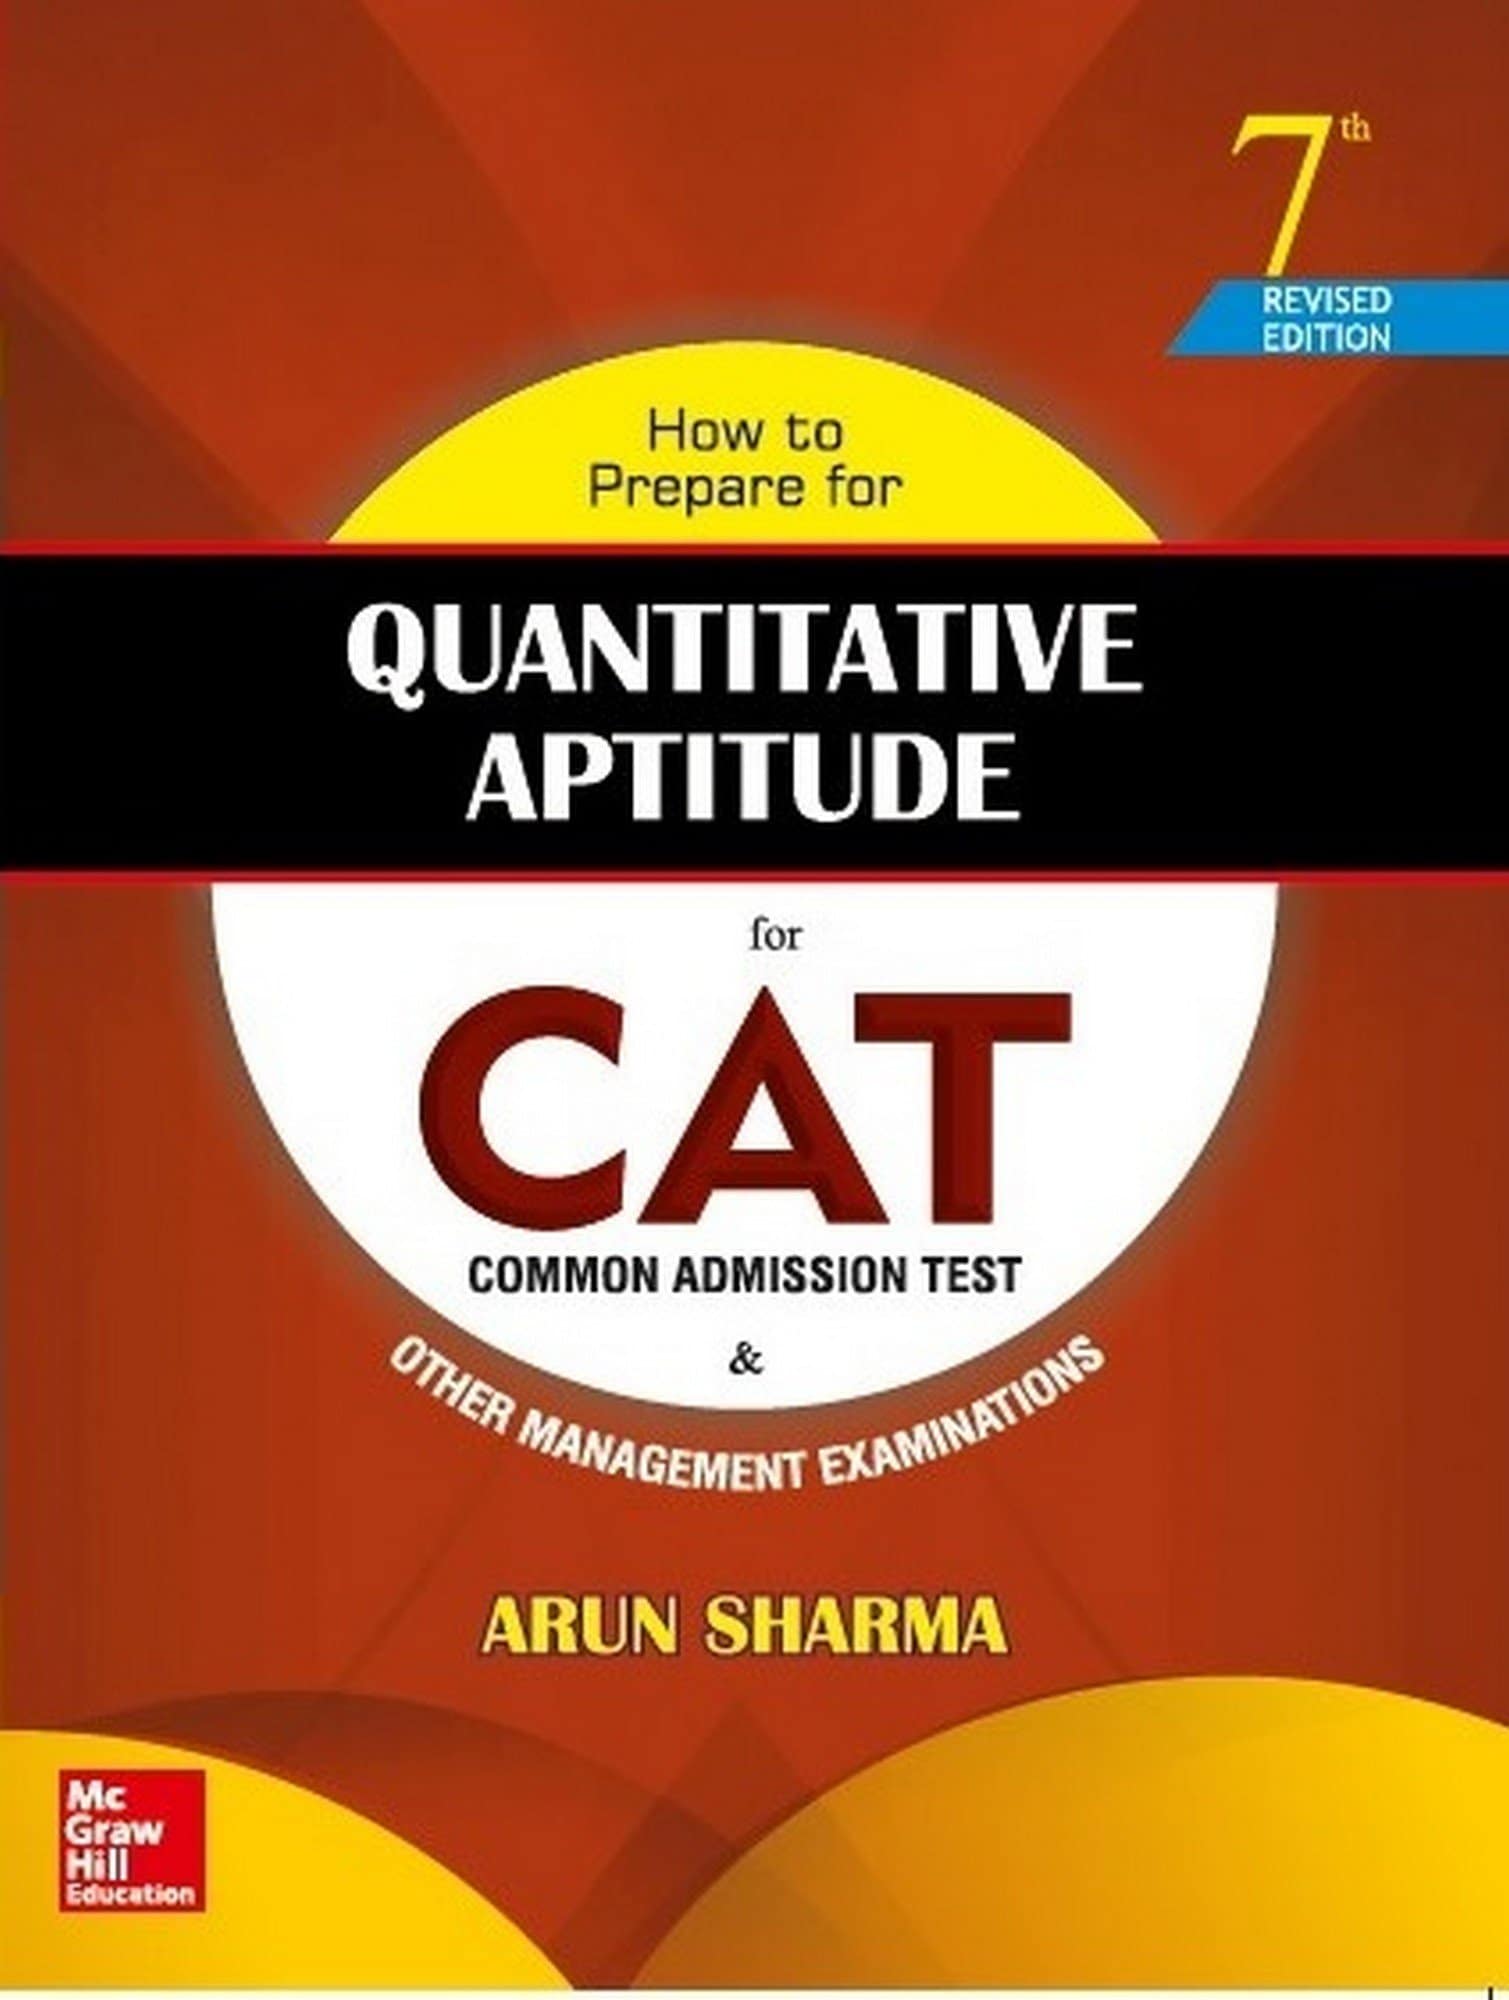 latest-quantitative-aptitude-quiz-quantitative-aptitude-quiz-for-upcoming-exams